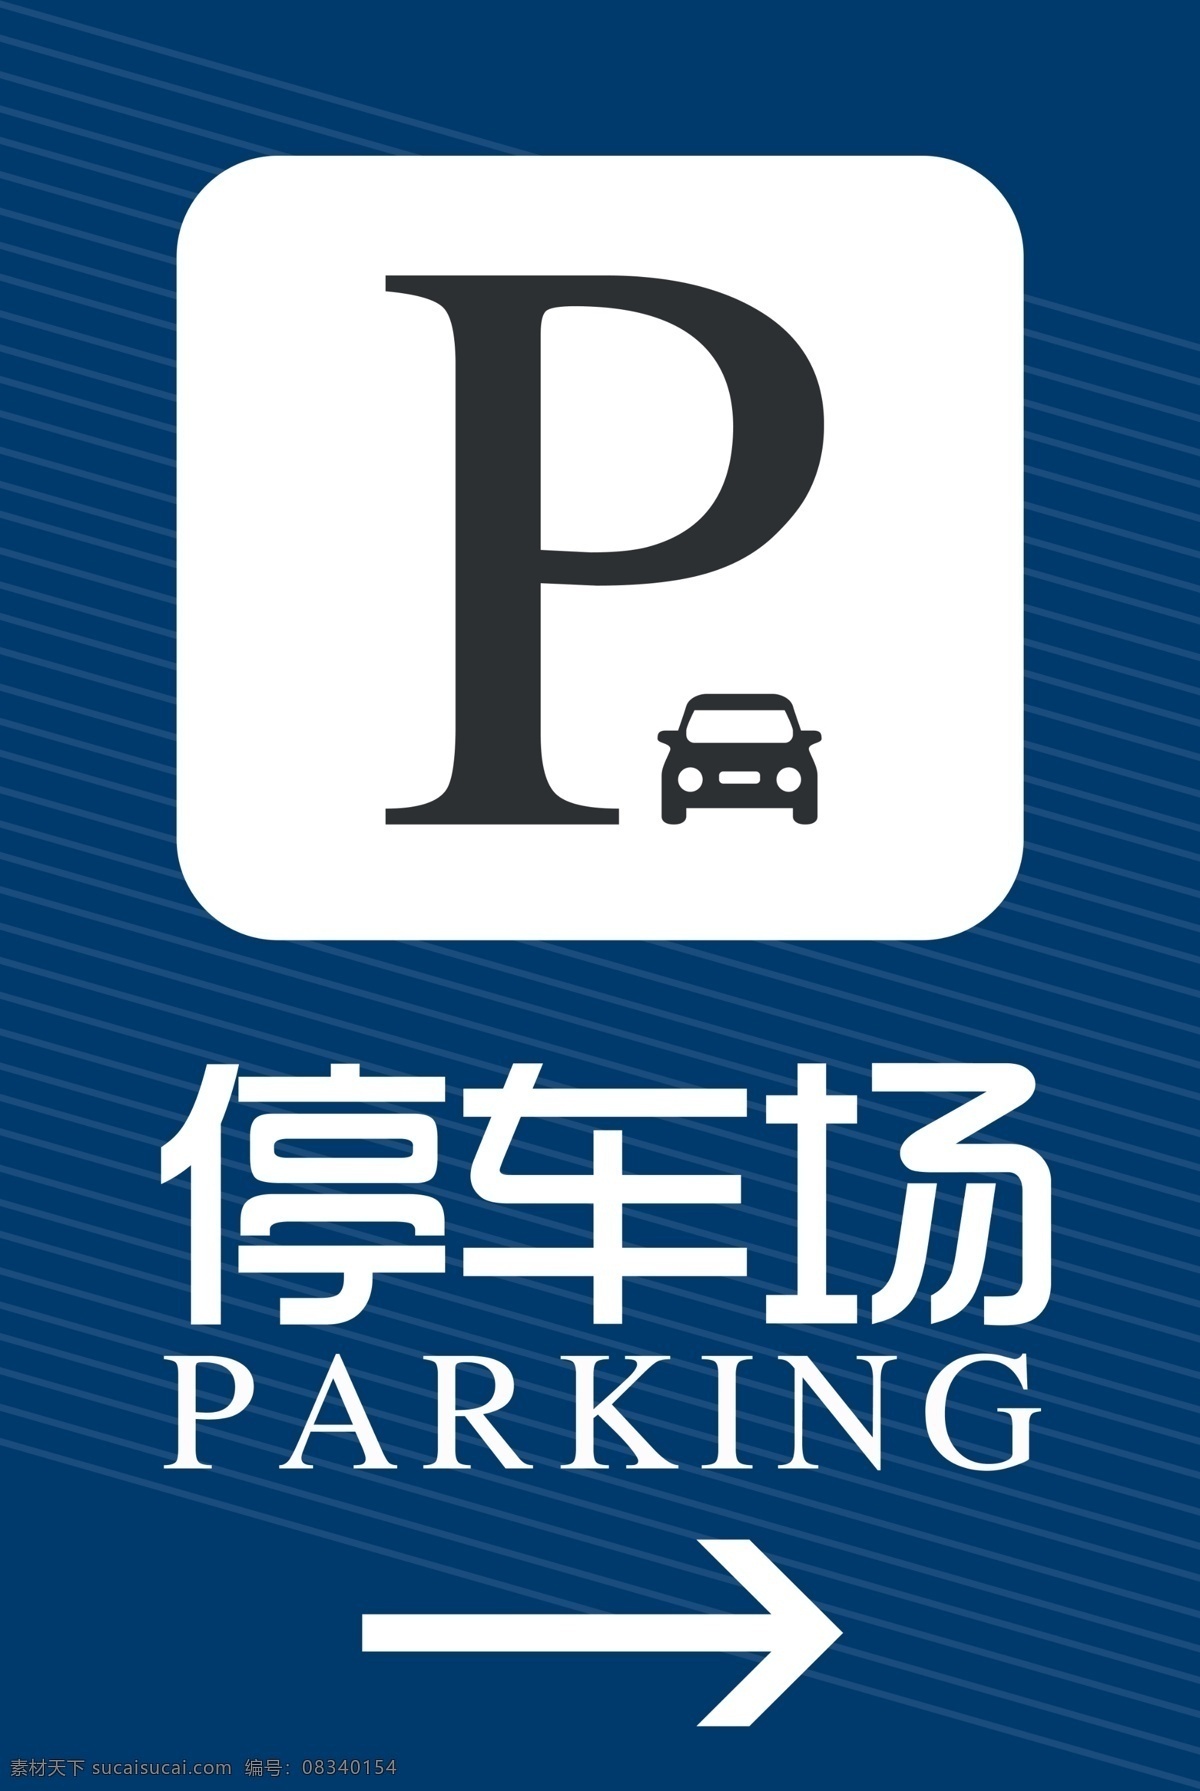 停车标识 停车 停车场 临时停车 车位 停車 标志图标 其他图标